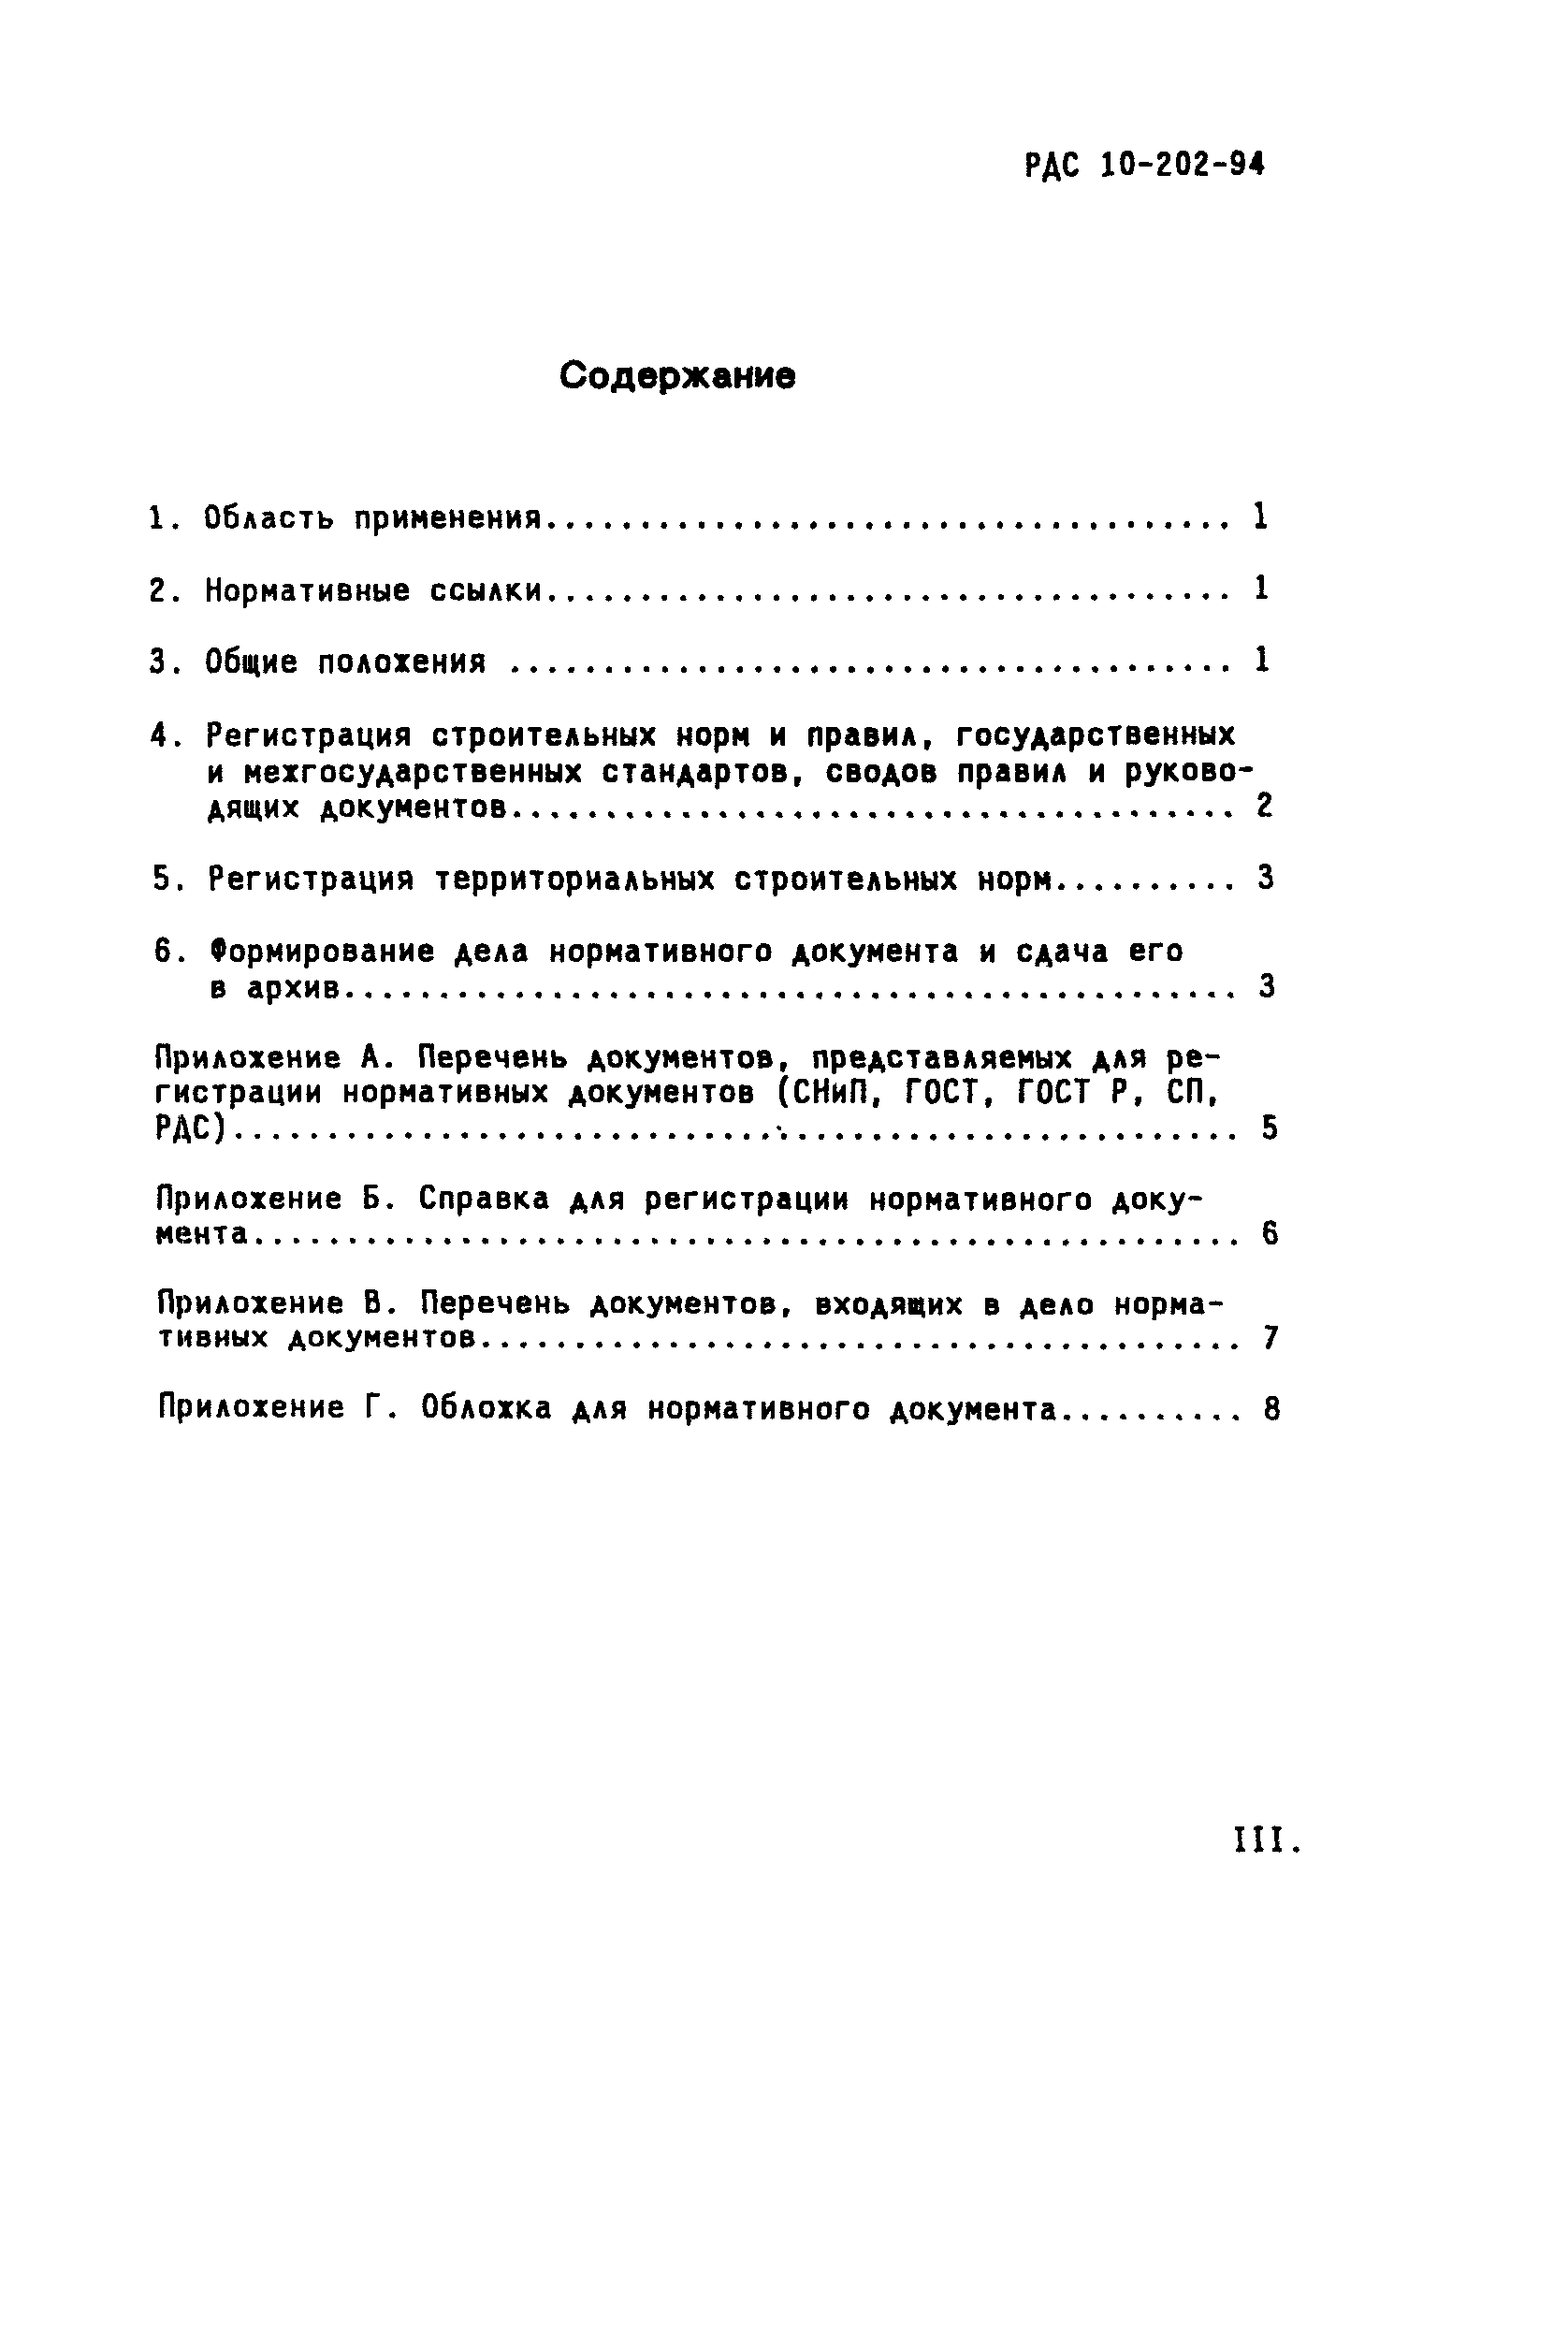 РДС 10-202-94